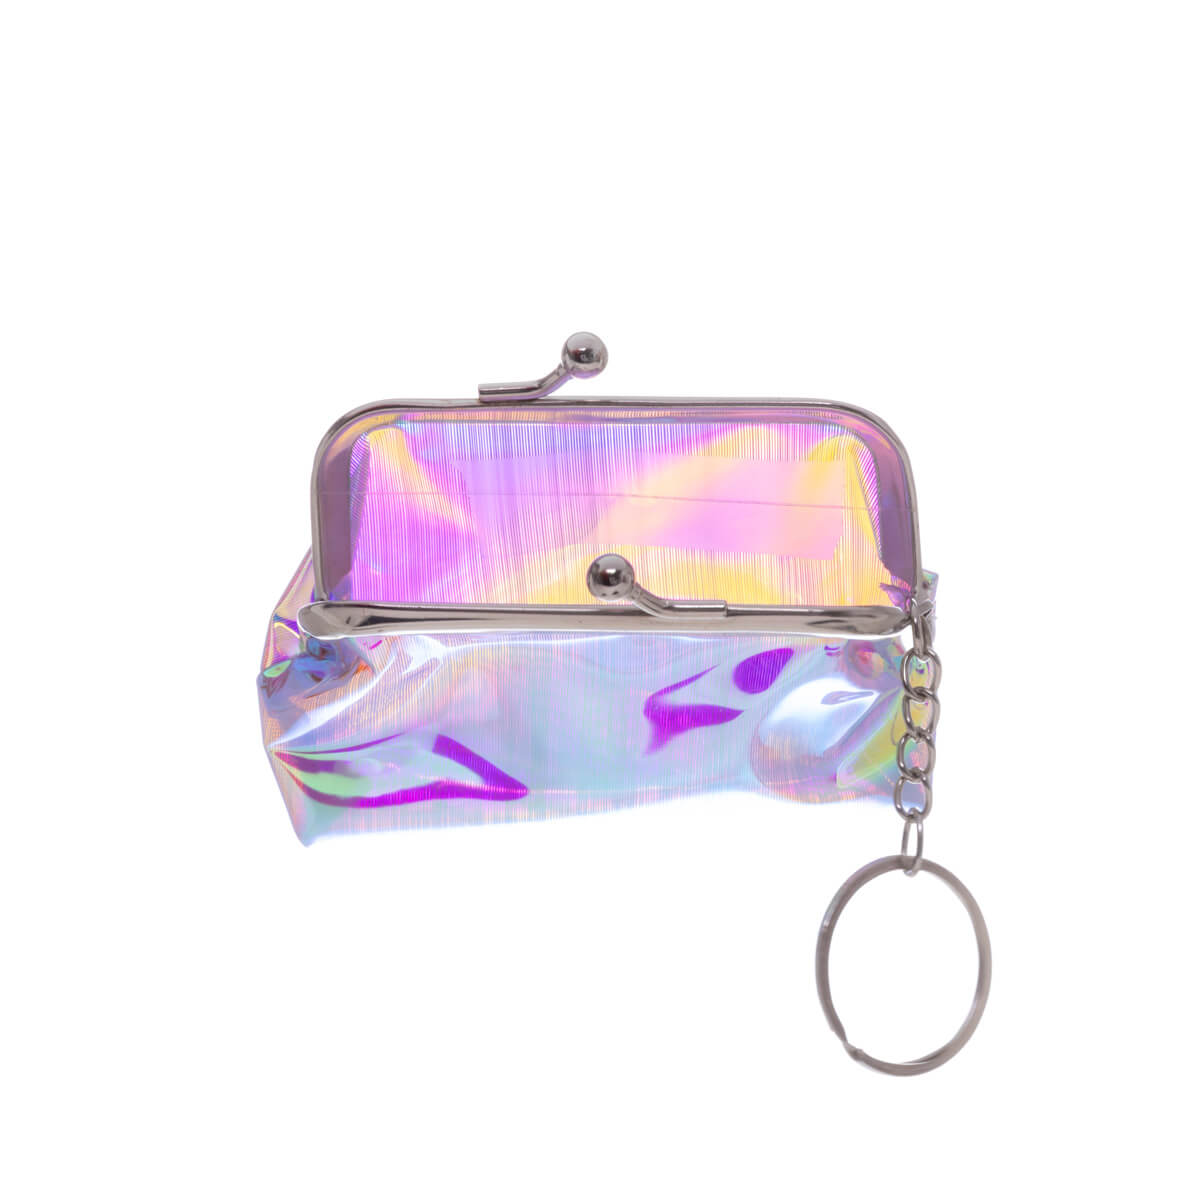 Sparkling purse keyring